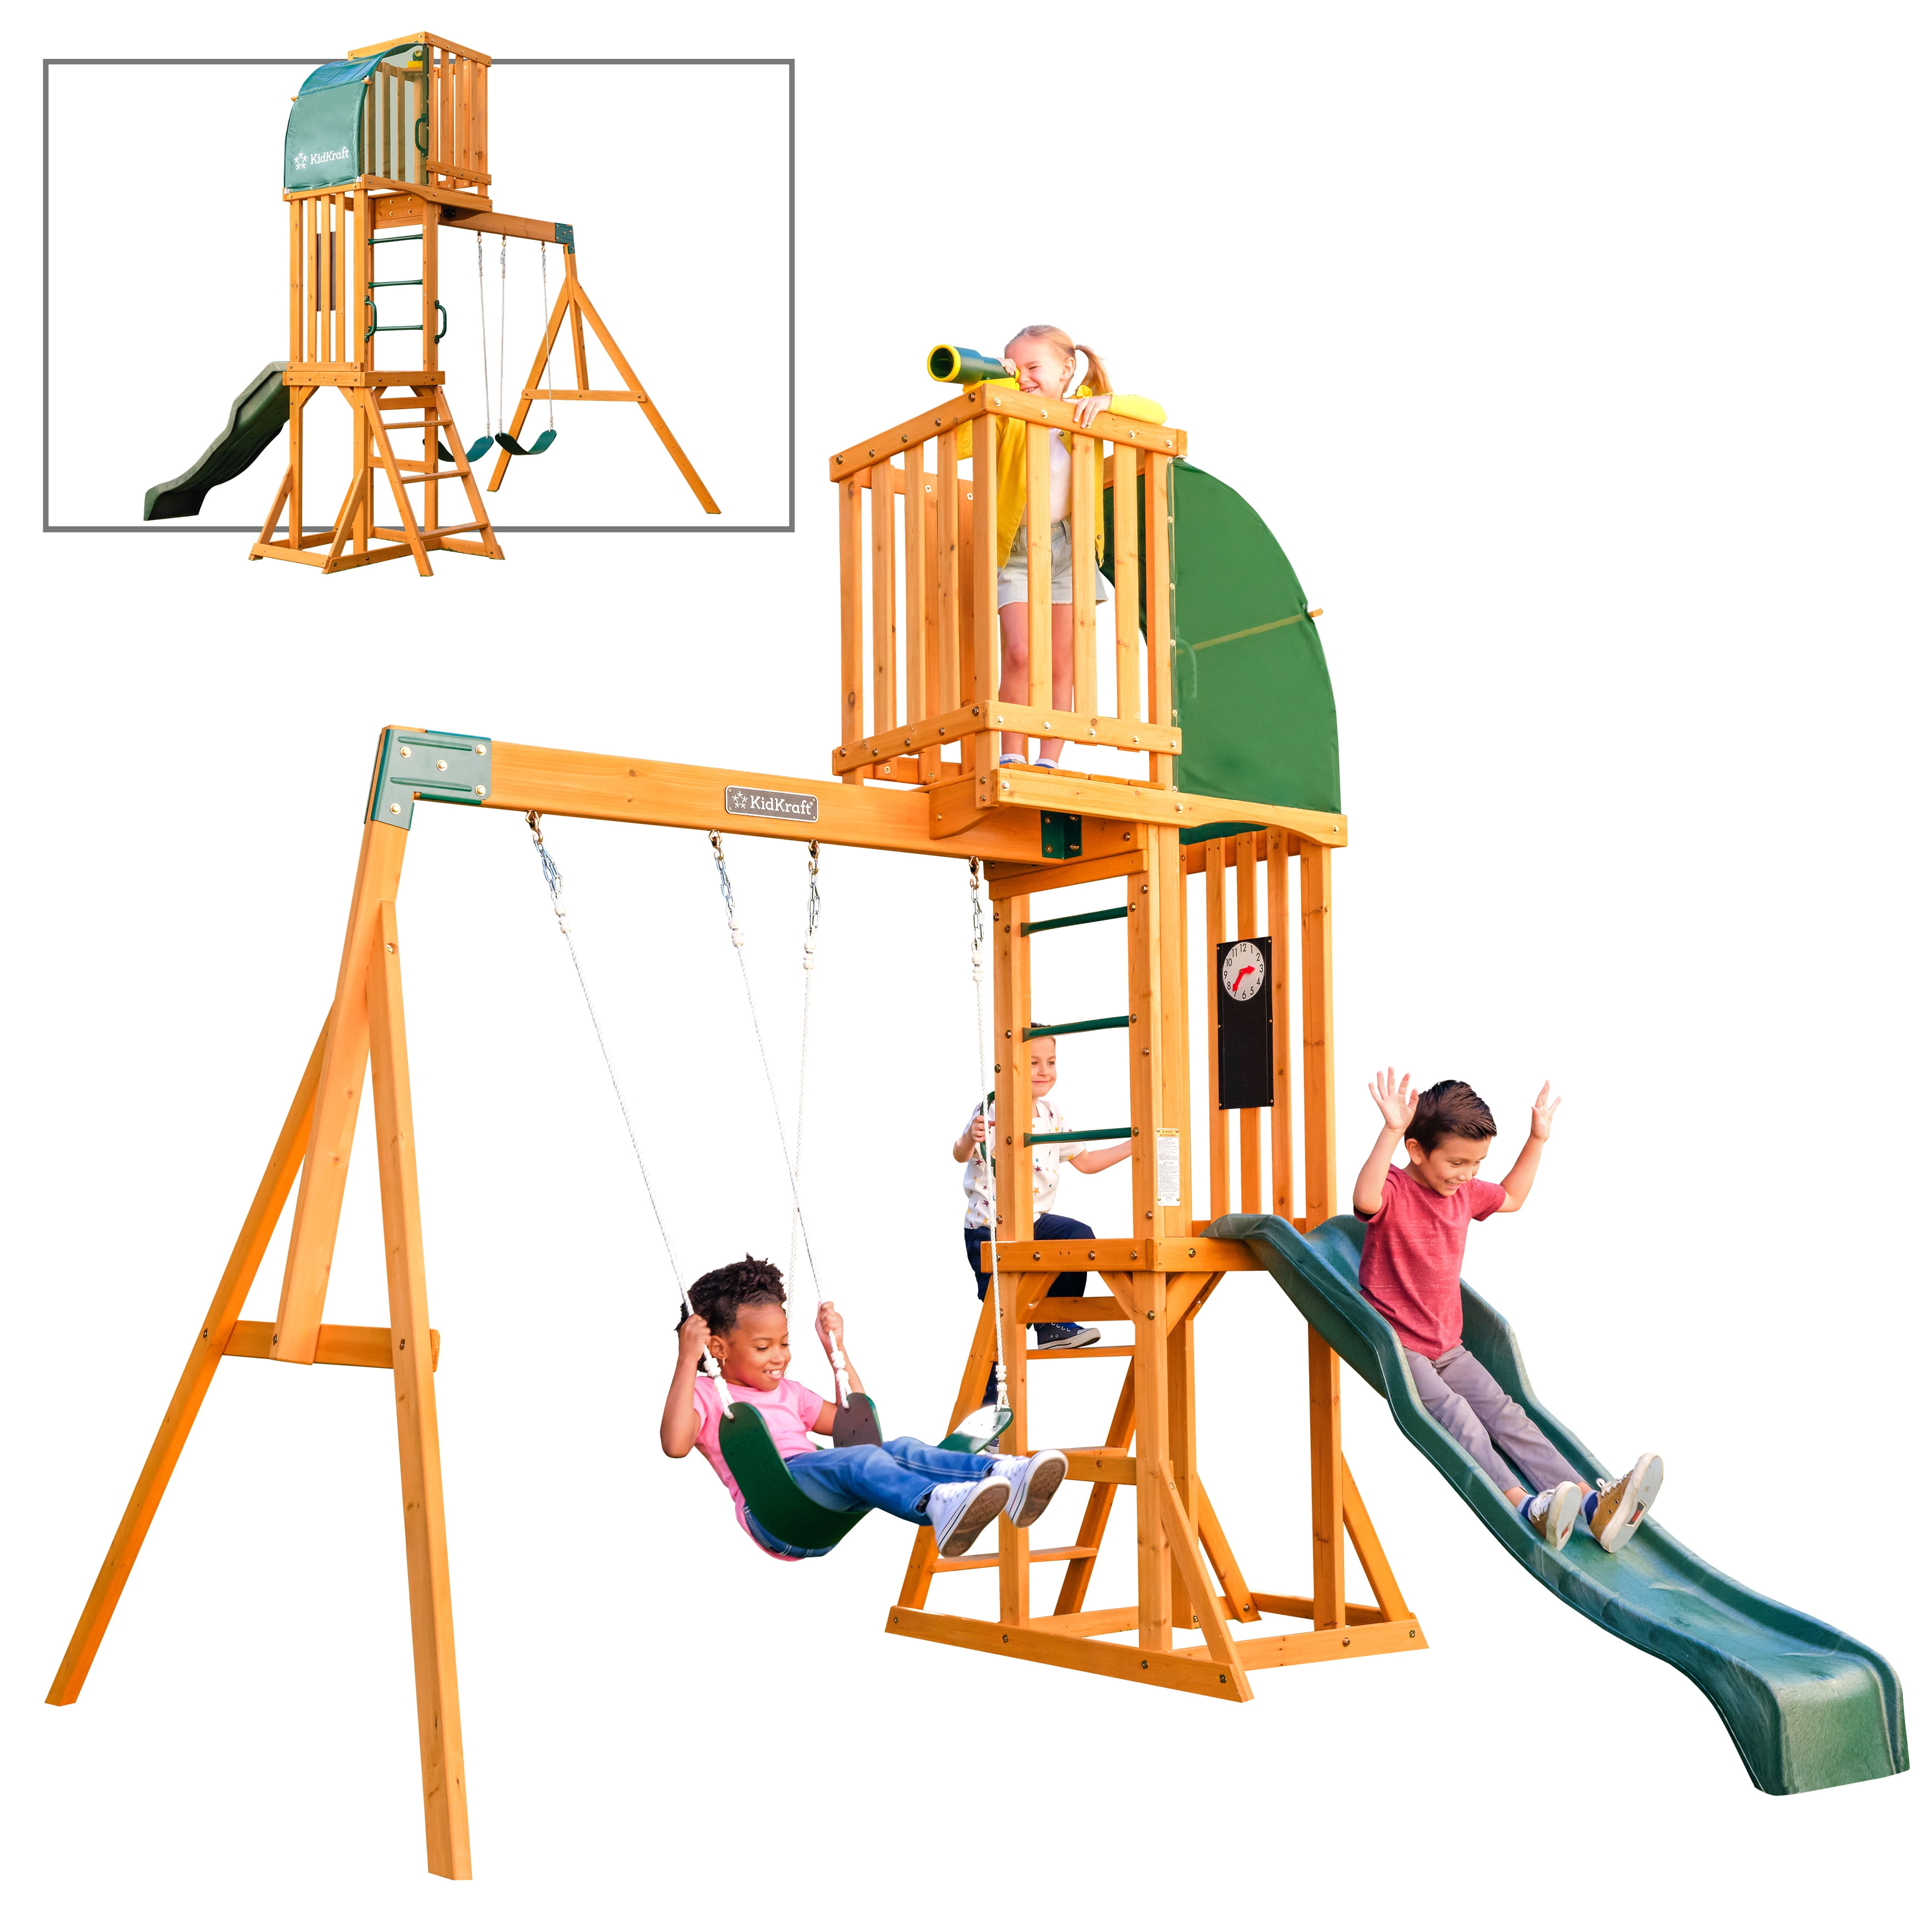 KidKraft Hawk Tower Wooden Swing Set with Slide and 2 Belt Swings, 9.9 feet  Tall